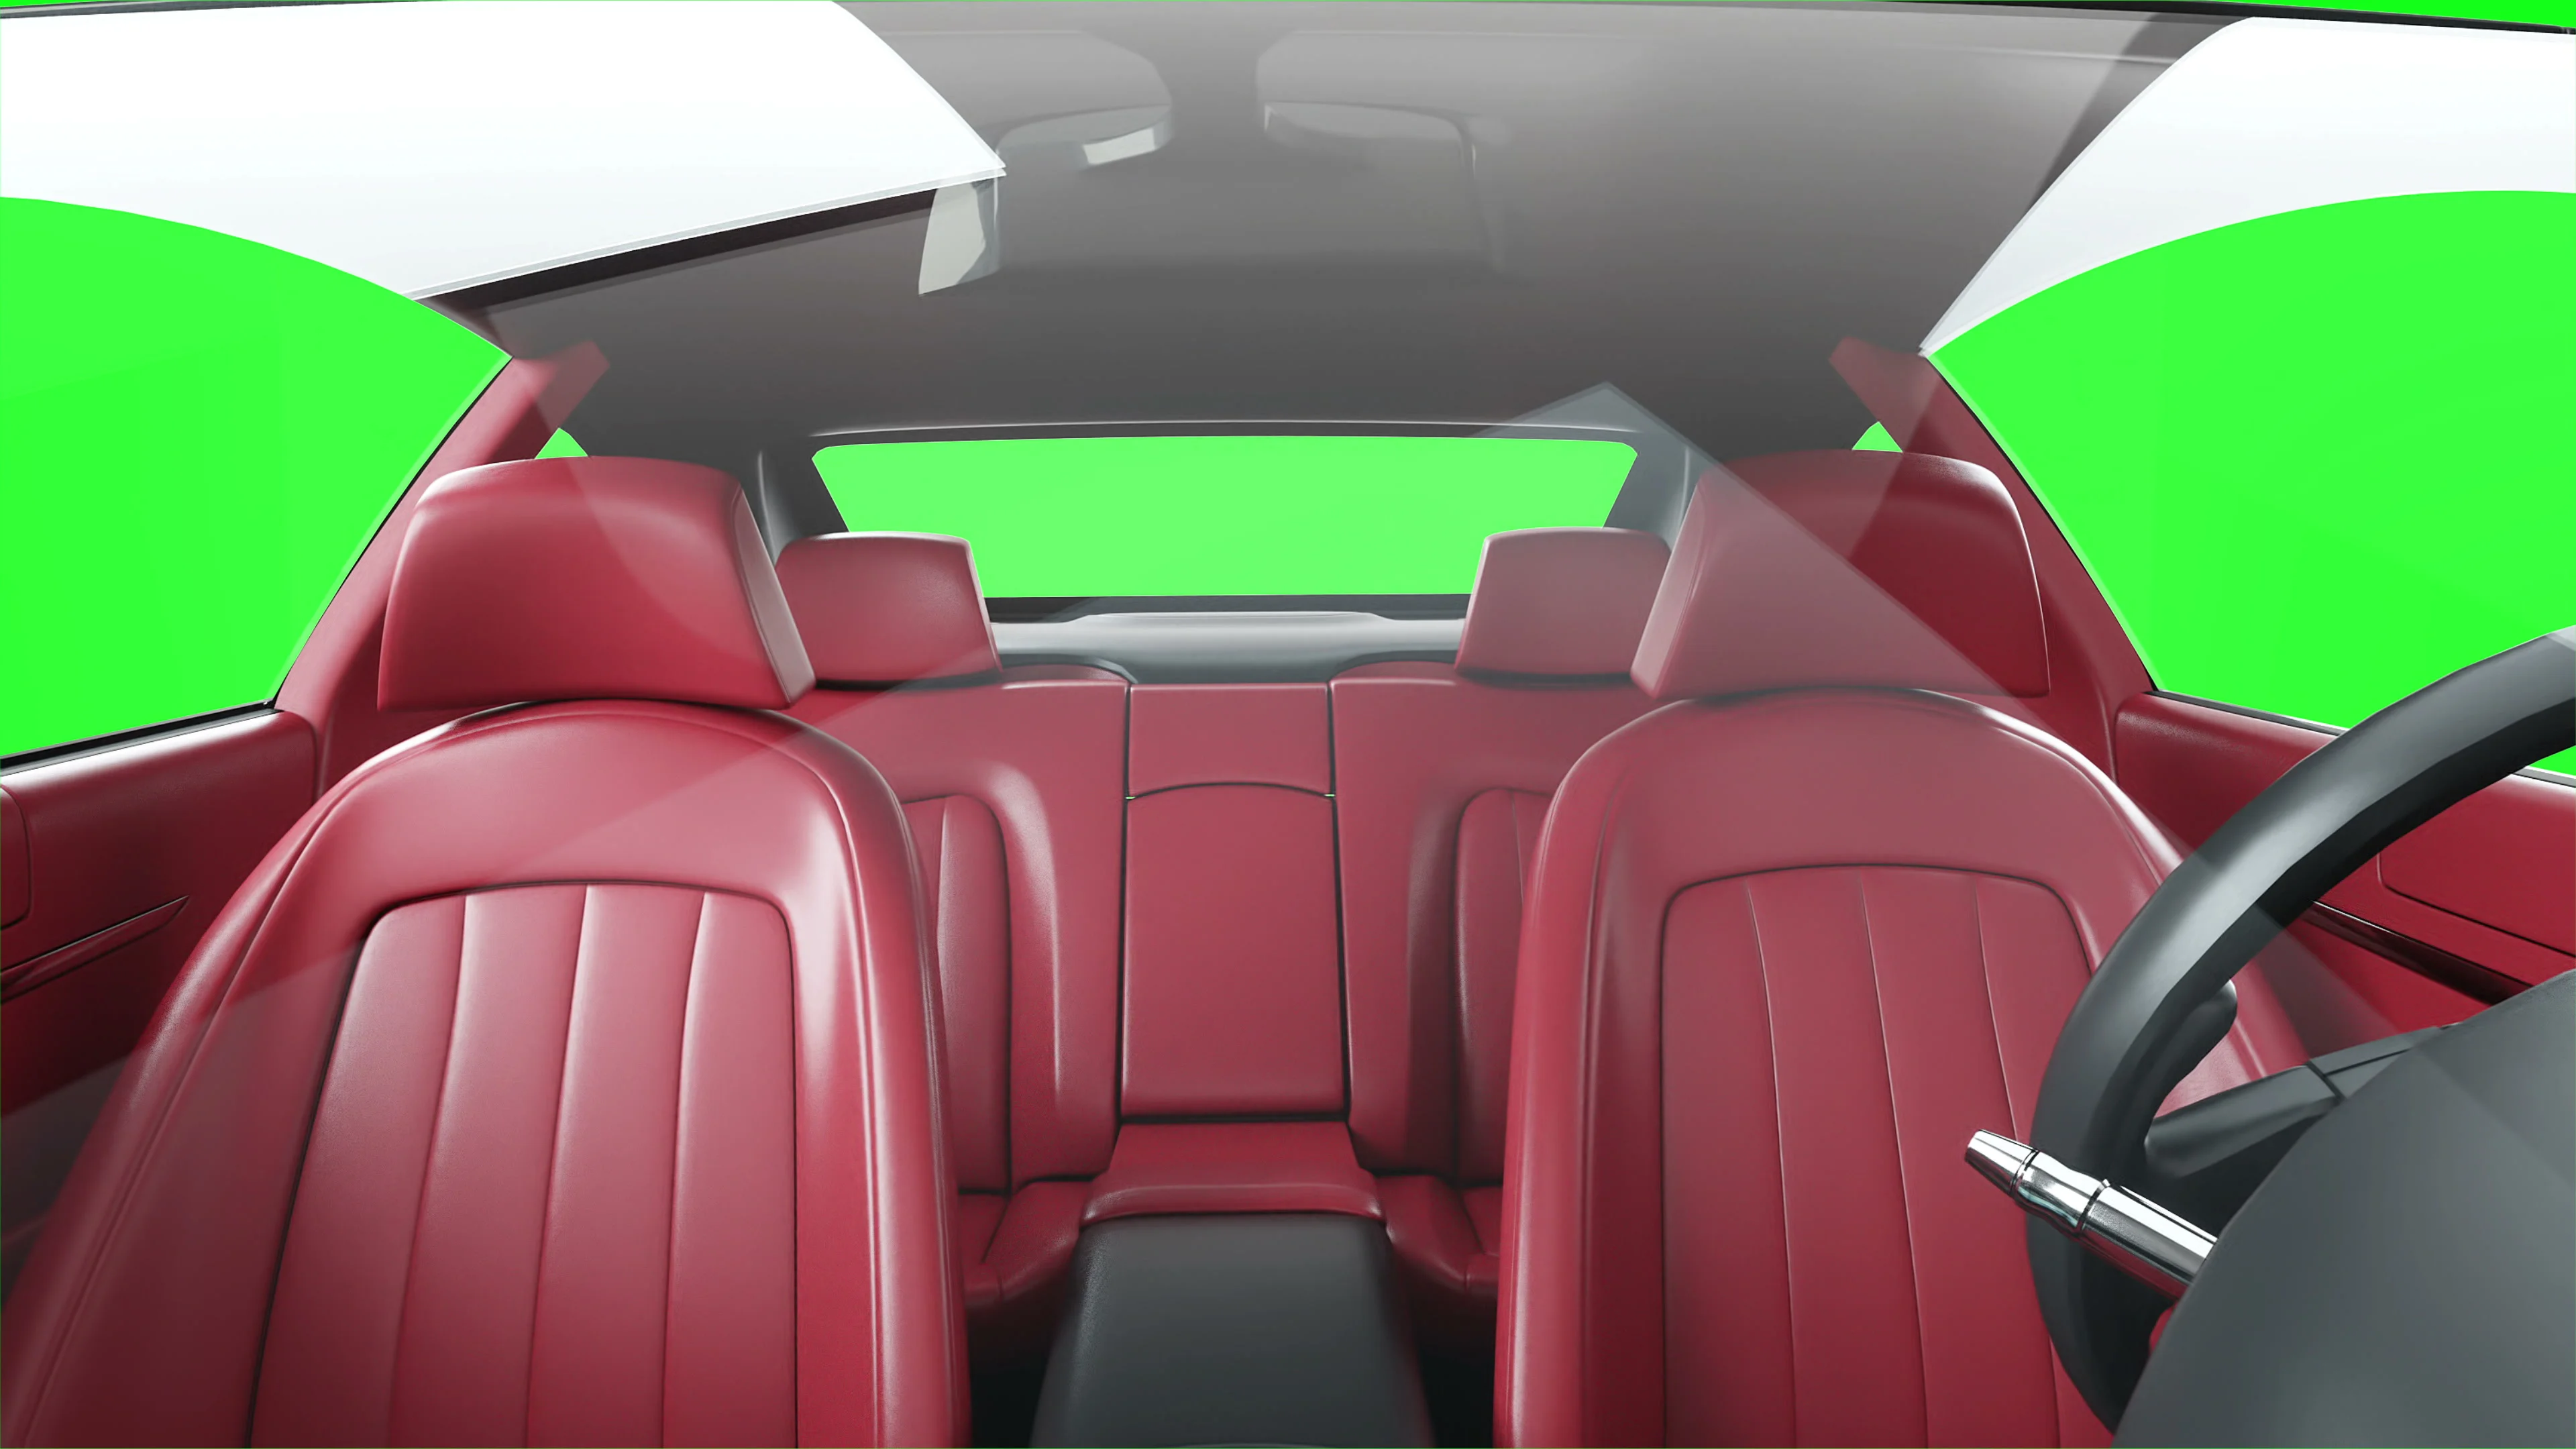 Tổng hợp Car background green screen đa dạng và phù hợp với nhiều thể loại video